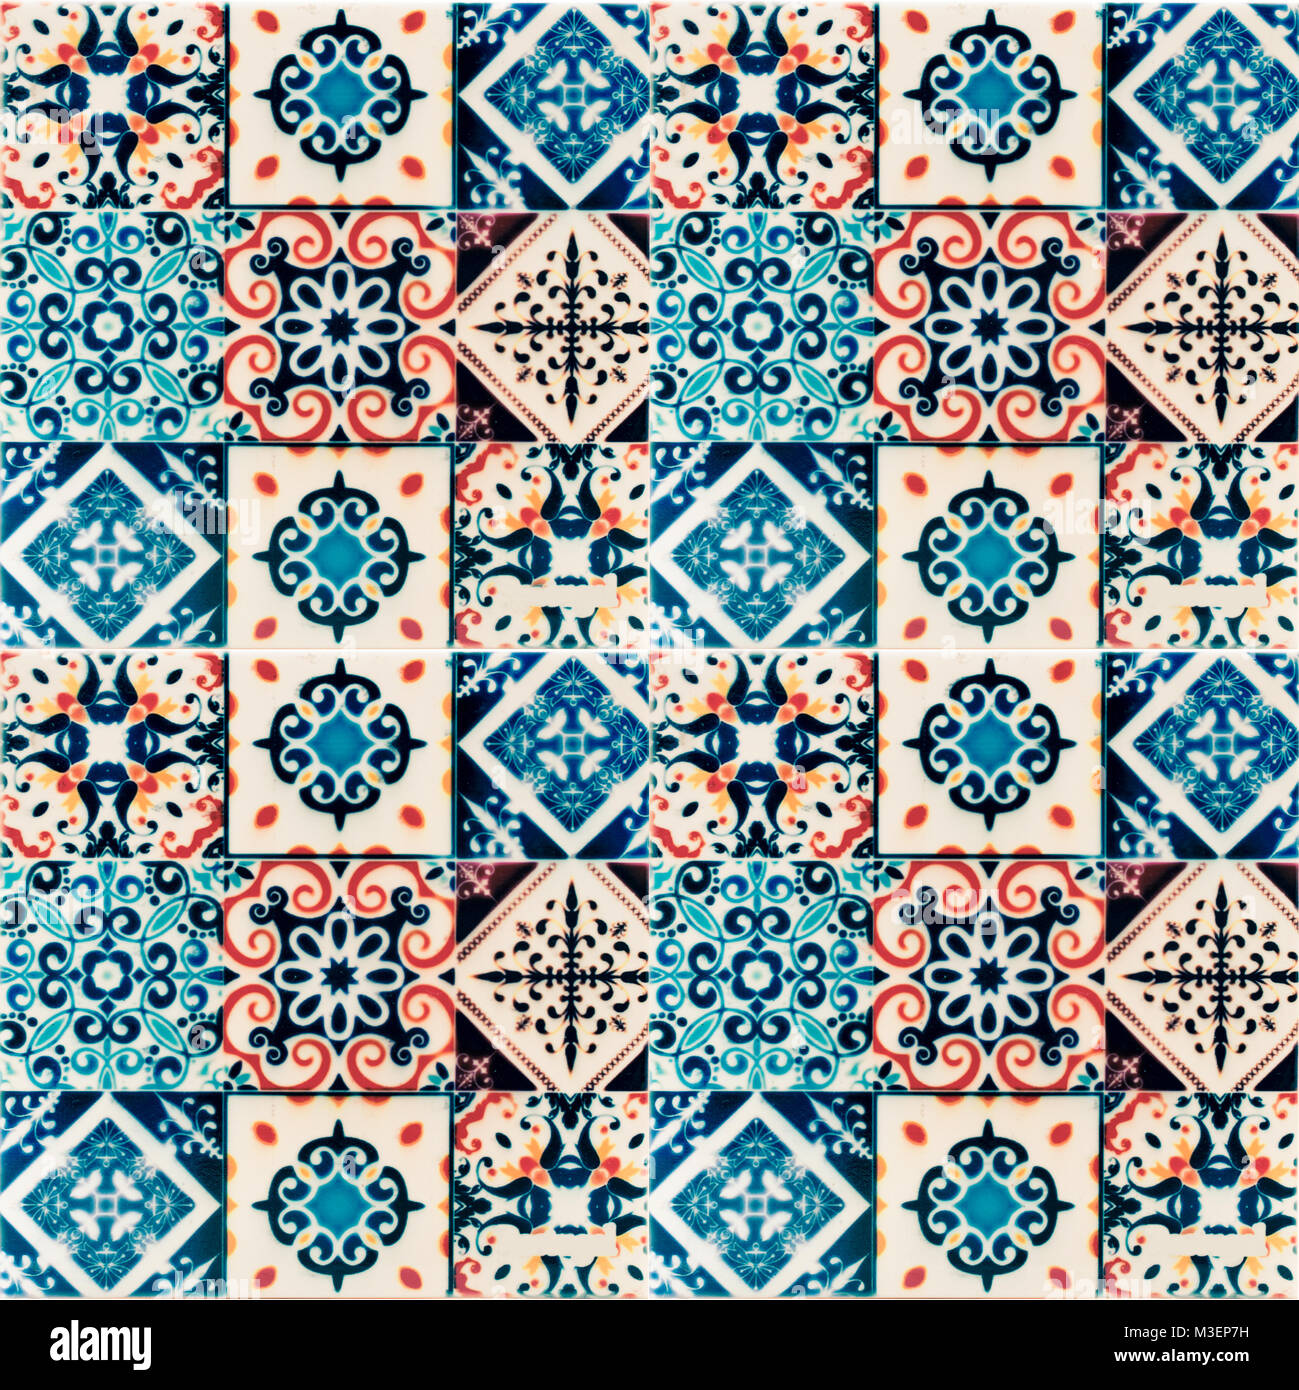 typical portuguese azulejo tiles Stock Photo